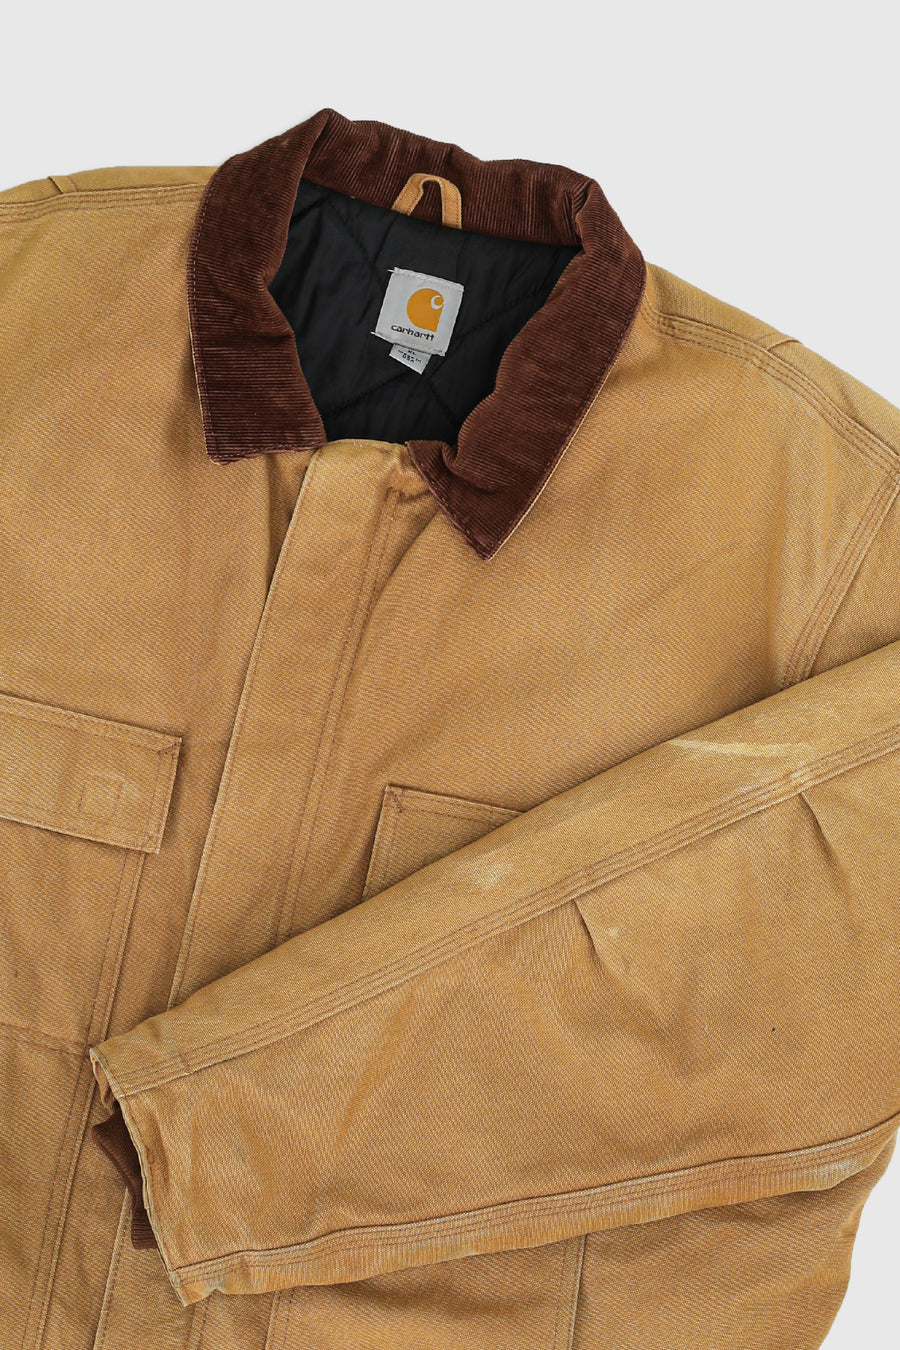 Vintage Carhartt Jacket - XL